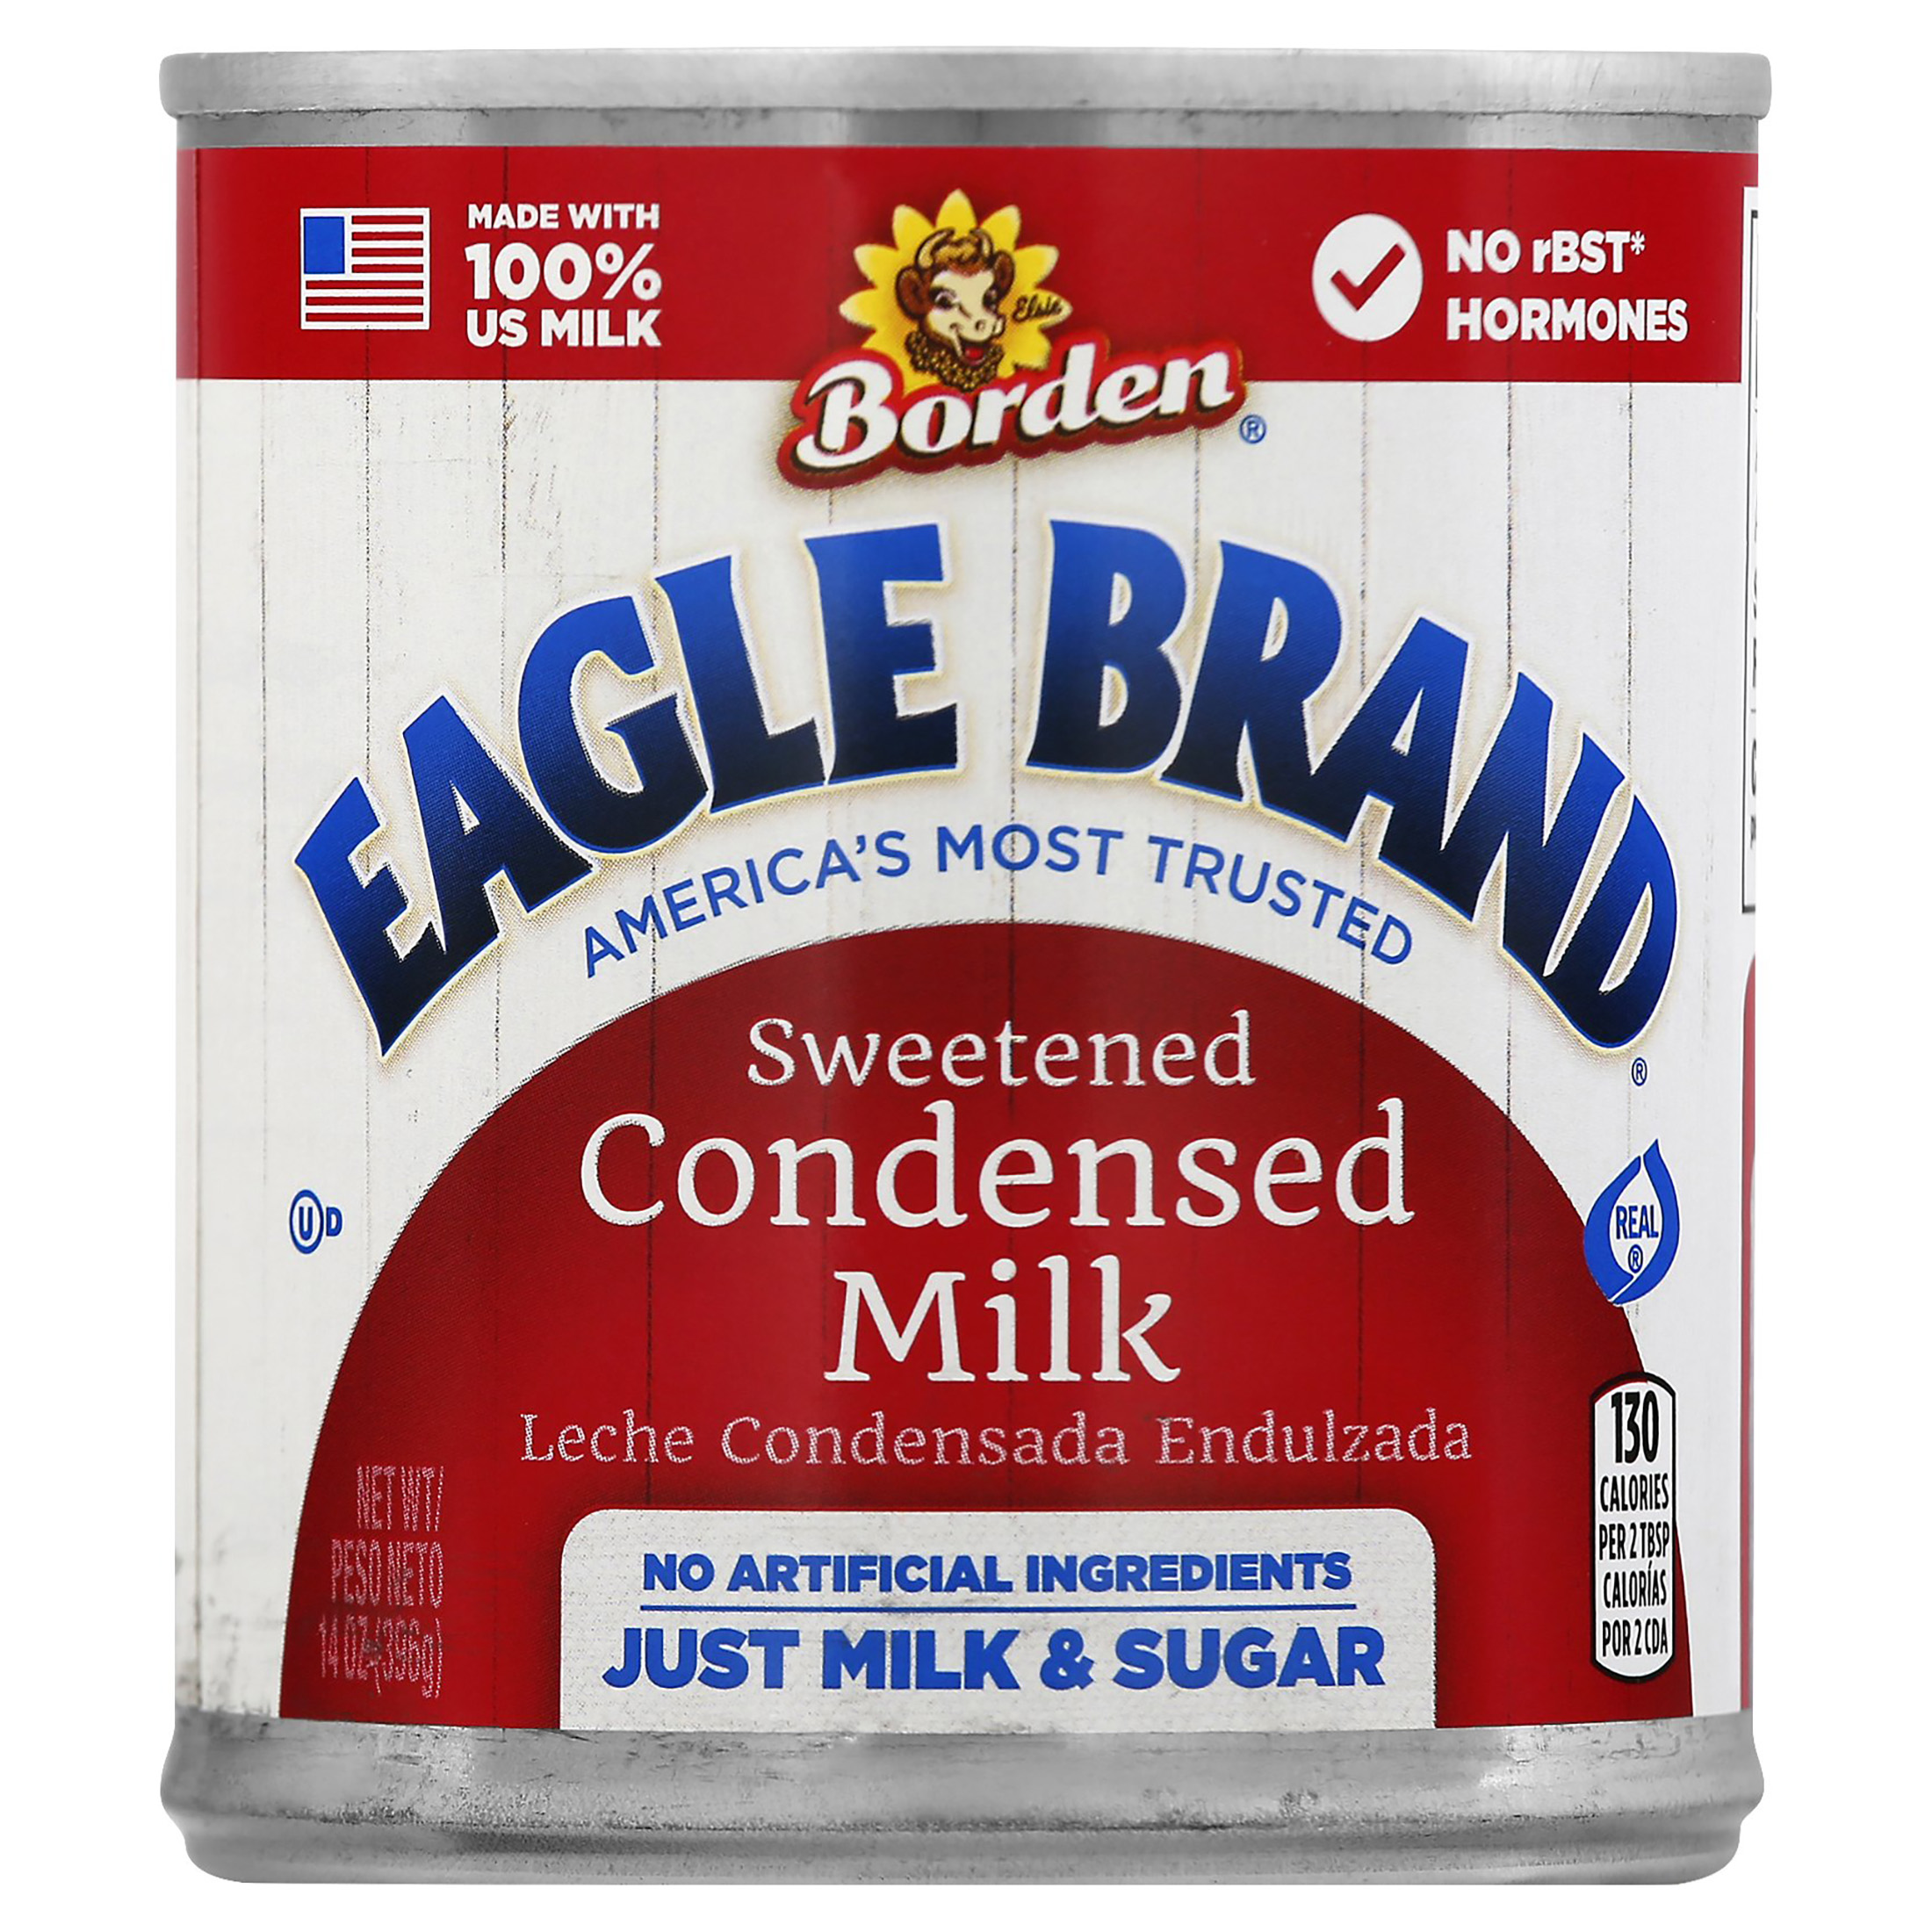 Borden Eagle Brand Condensed Milk - image 1 of 12